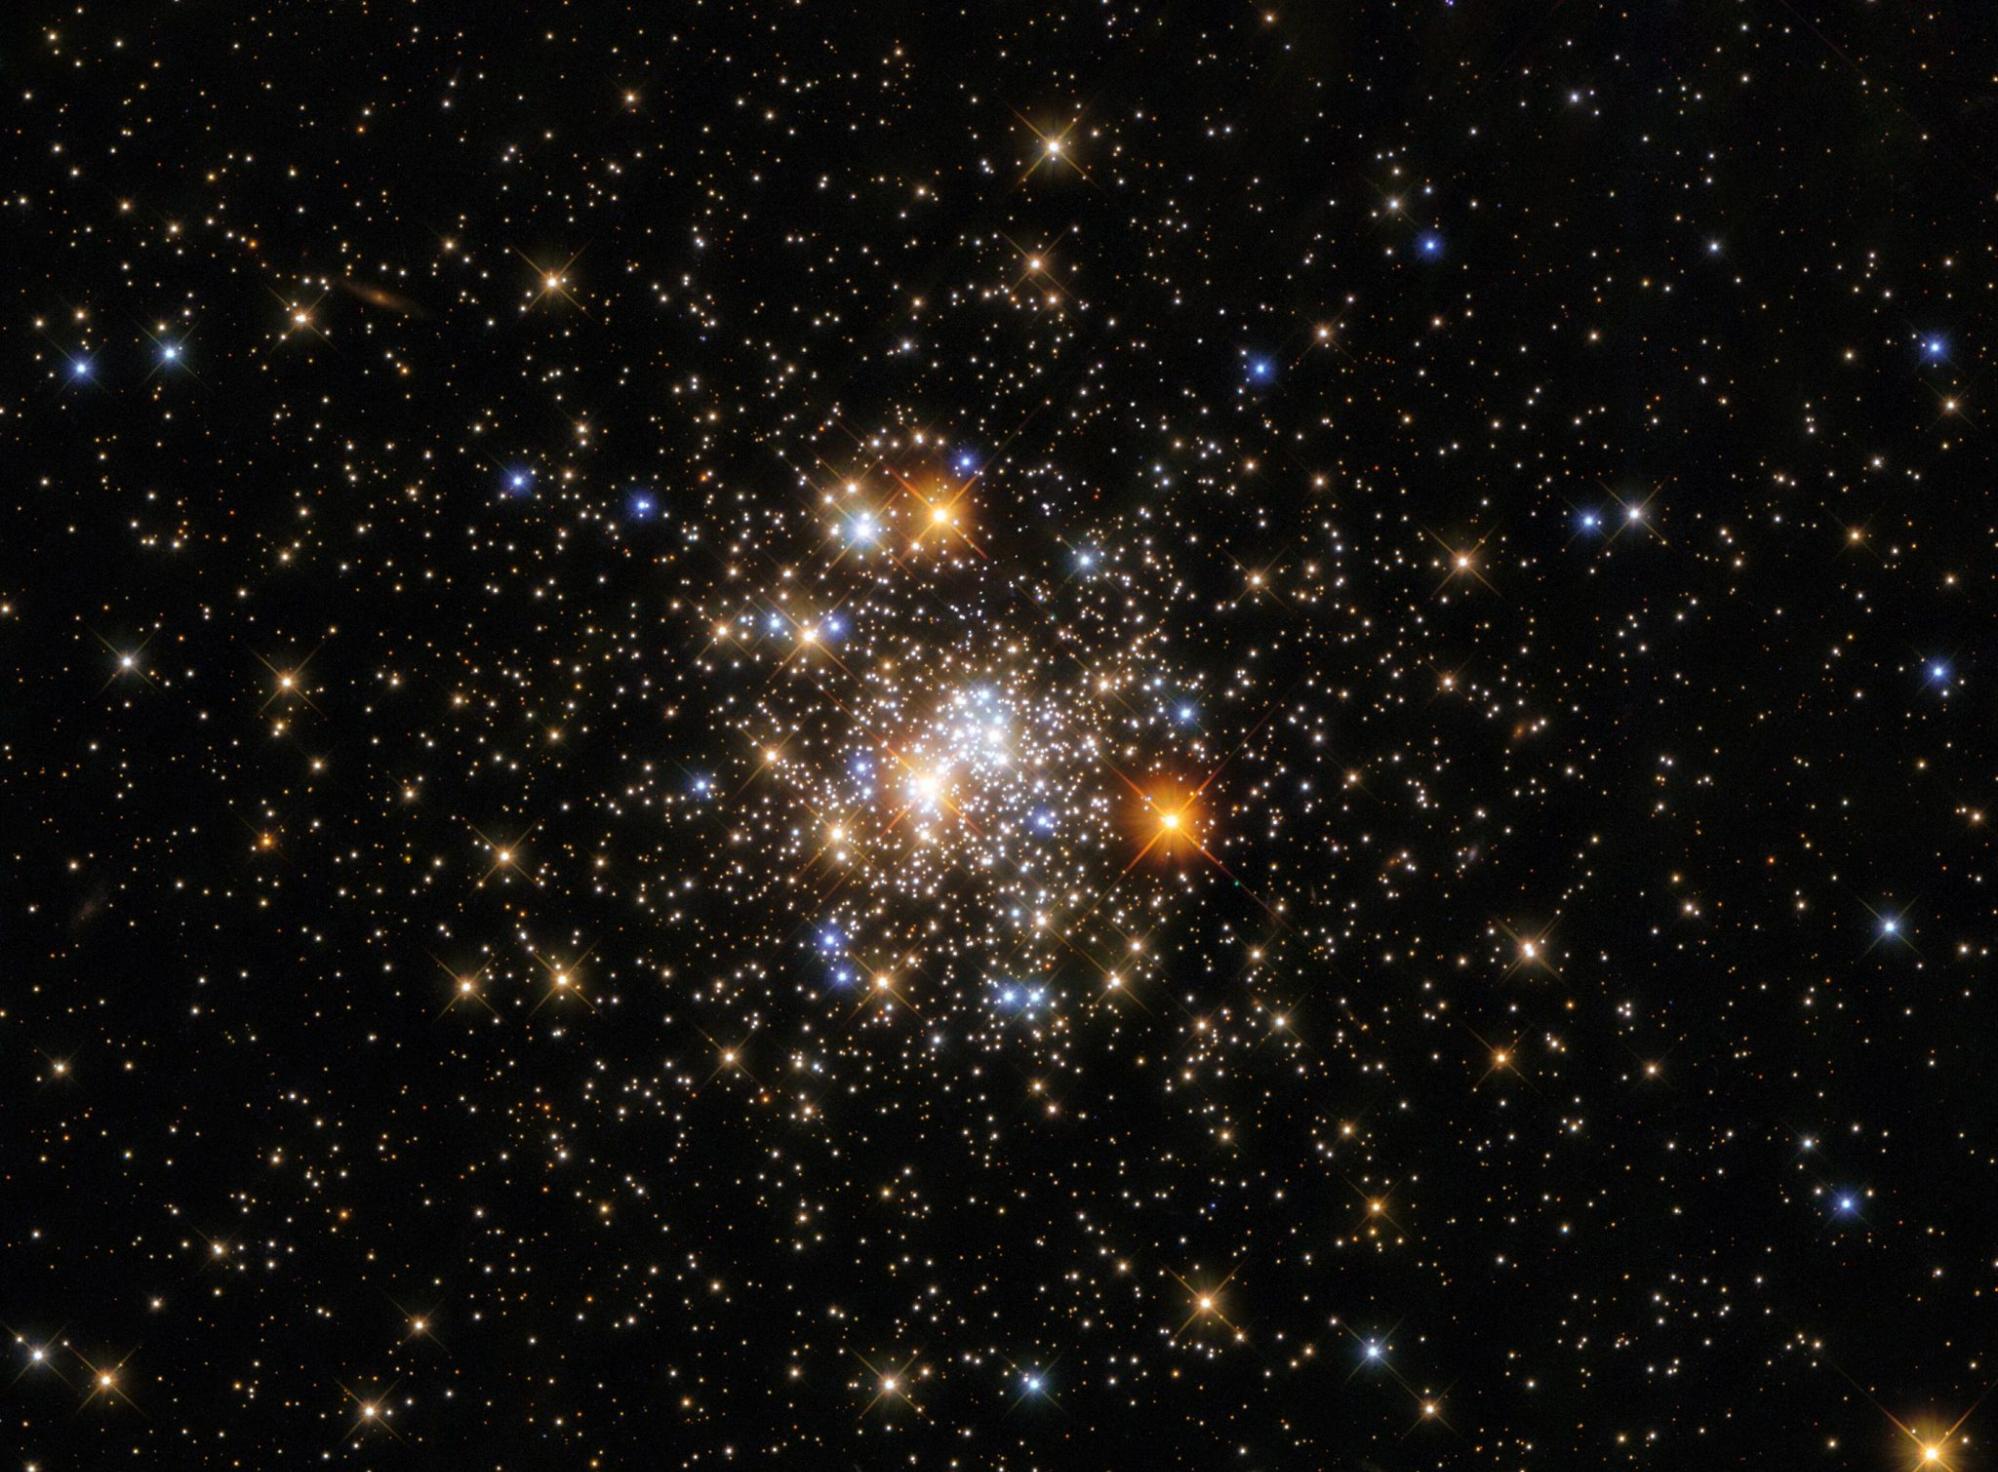 哈勃太空望远镜拍摄的人马座球状星团NGC 6717